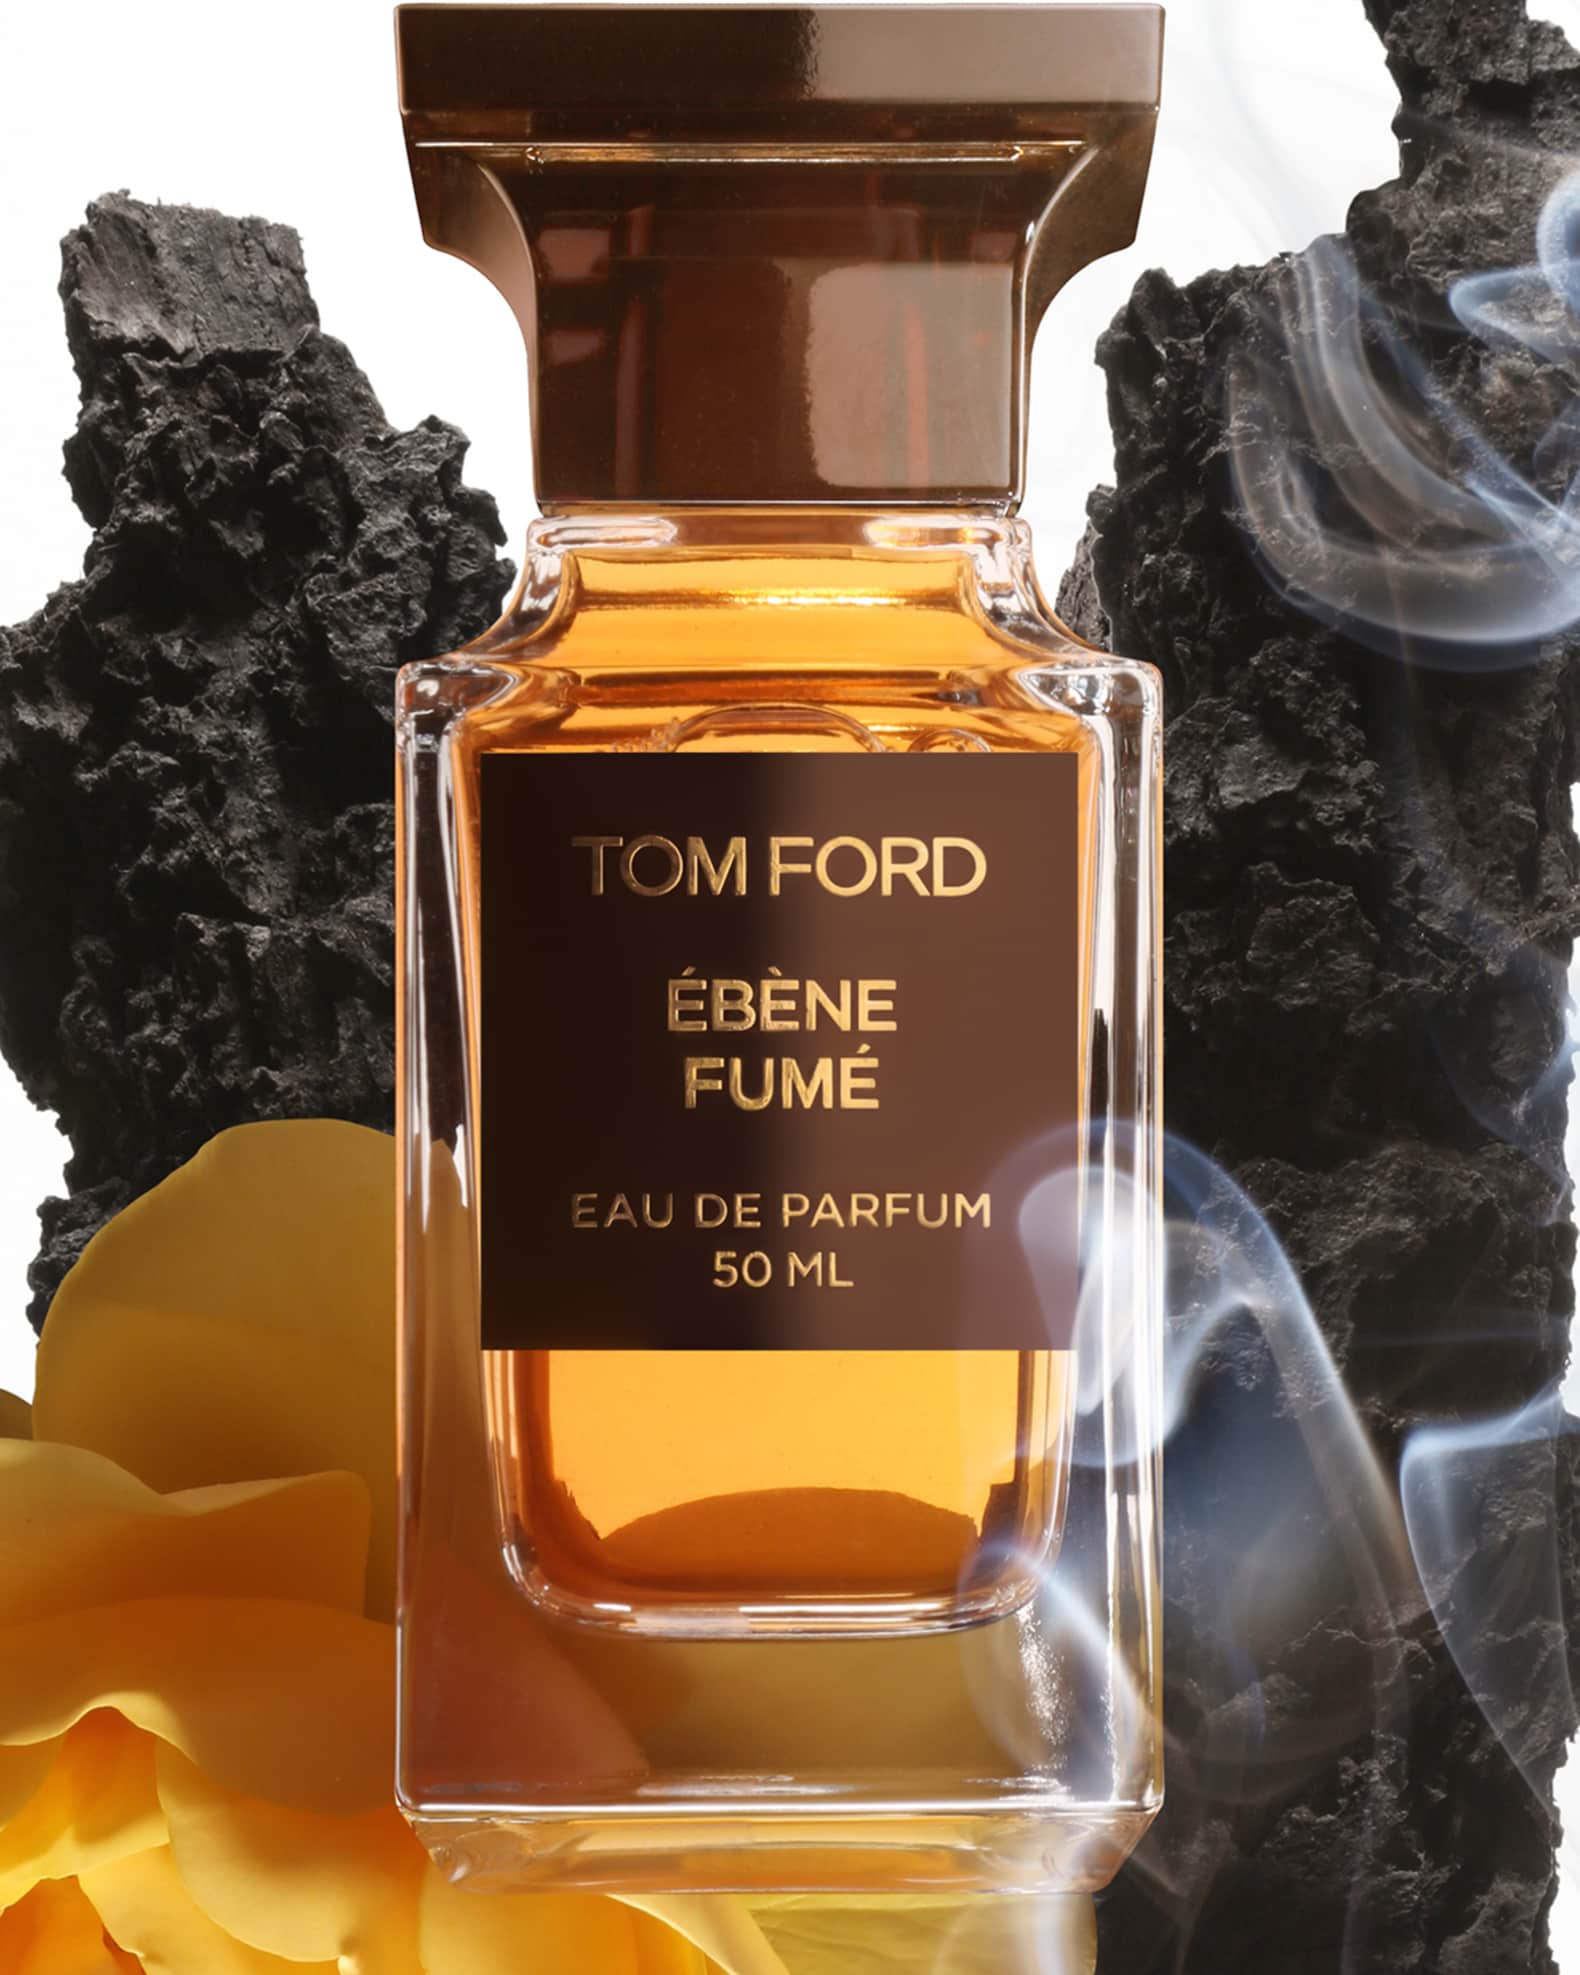 Tom Ford Ebene Fume Eau de Parfum 8.5 oz.